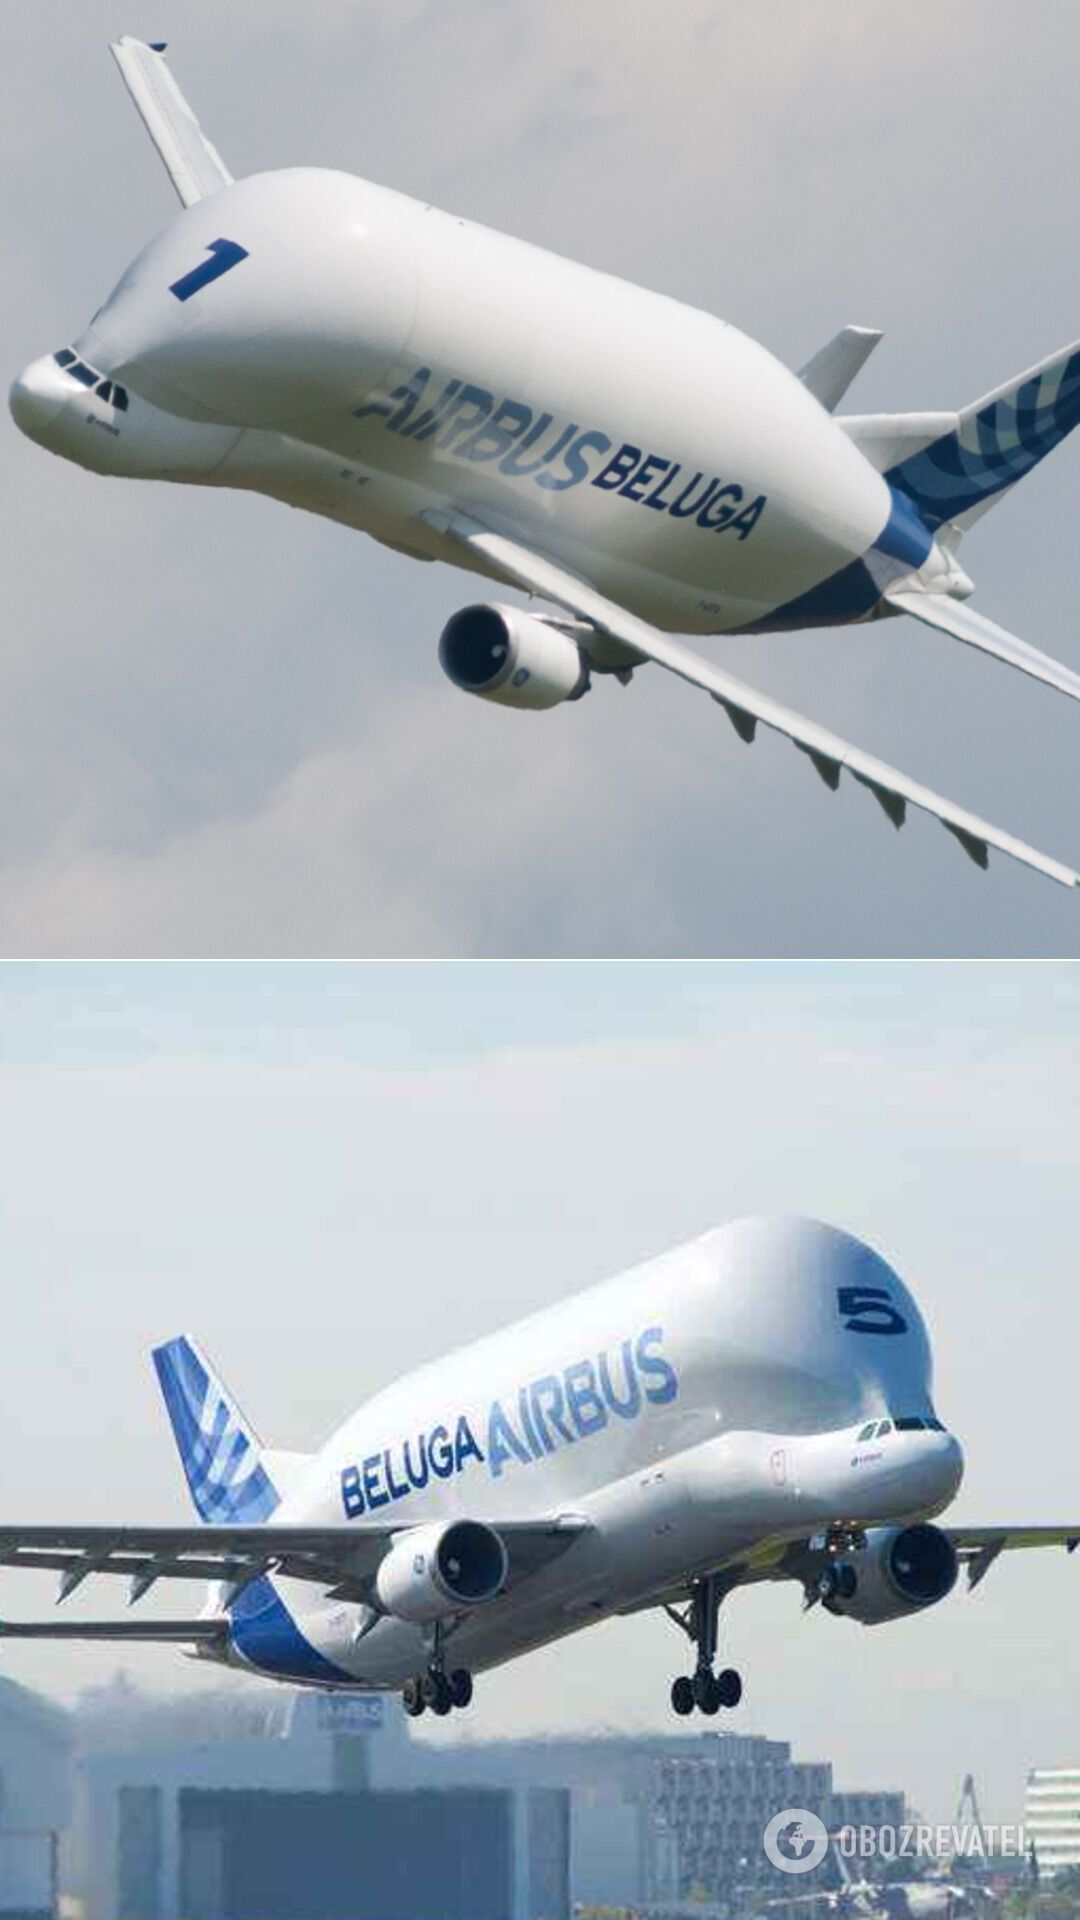 Самолет A300-600ST, который прозвали Белугой в авиационной отрасли. Его длина 56 метров, крыло 45 метров, высота 17 метров и пустая масса 86 тонн, максимальная взлетная масса Beluga составляет 155 тонн. Было выпущено всего пять экземпляров такого самолета